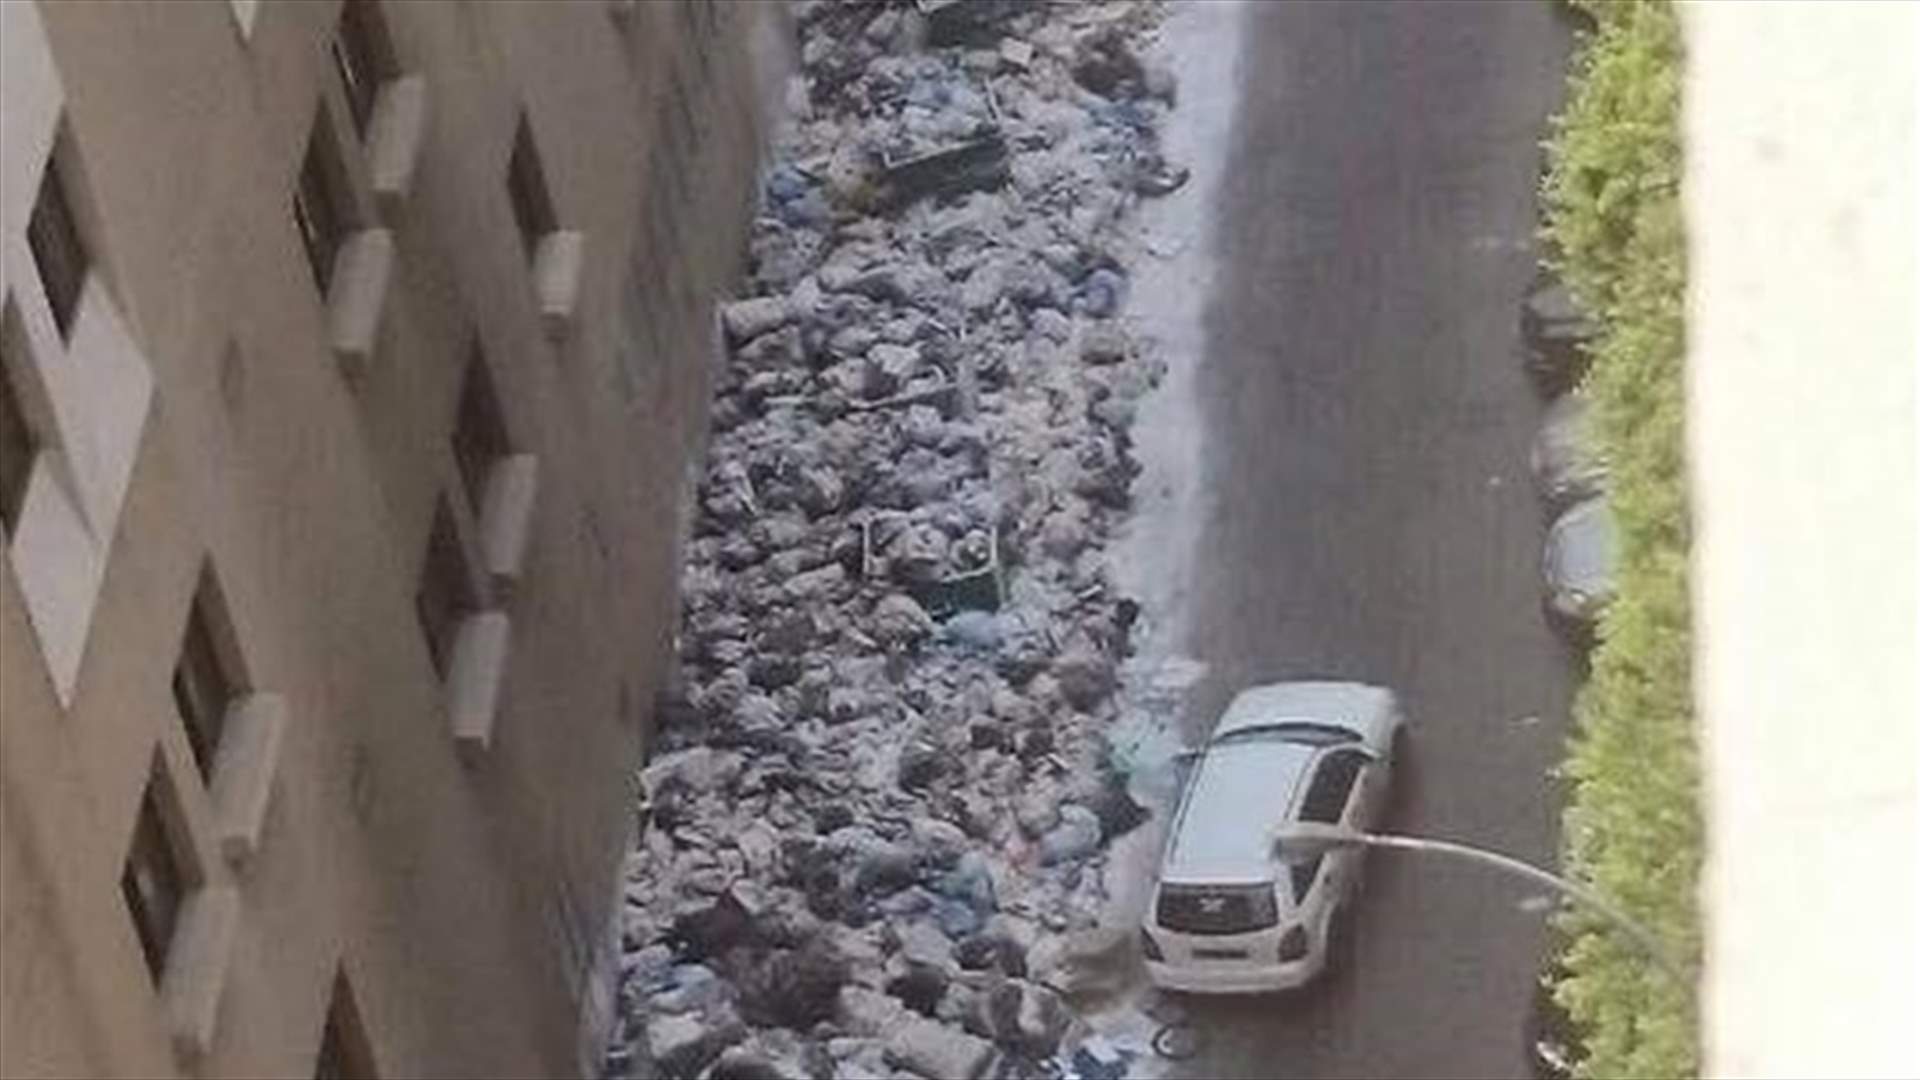 ازالة النفايات قرب مستشفى مار يوسف في الدورة وعزل المنطقة